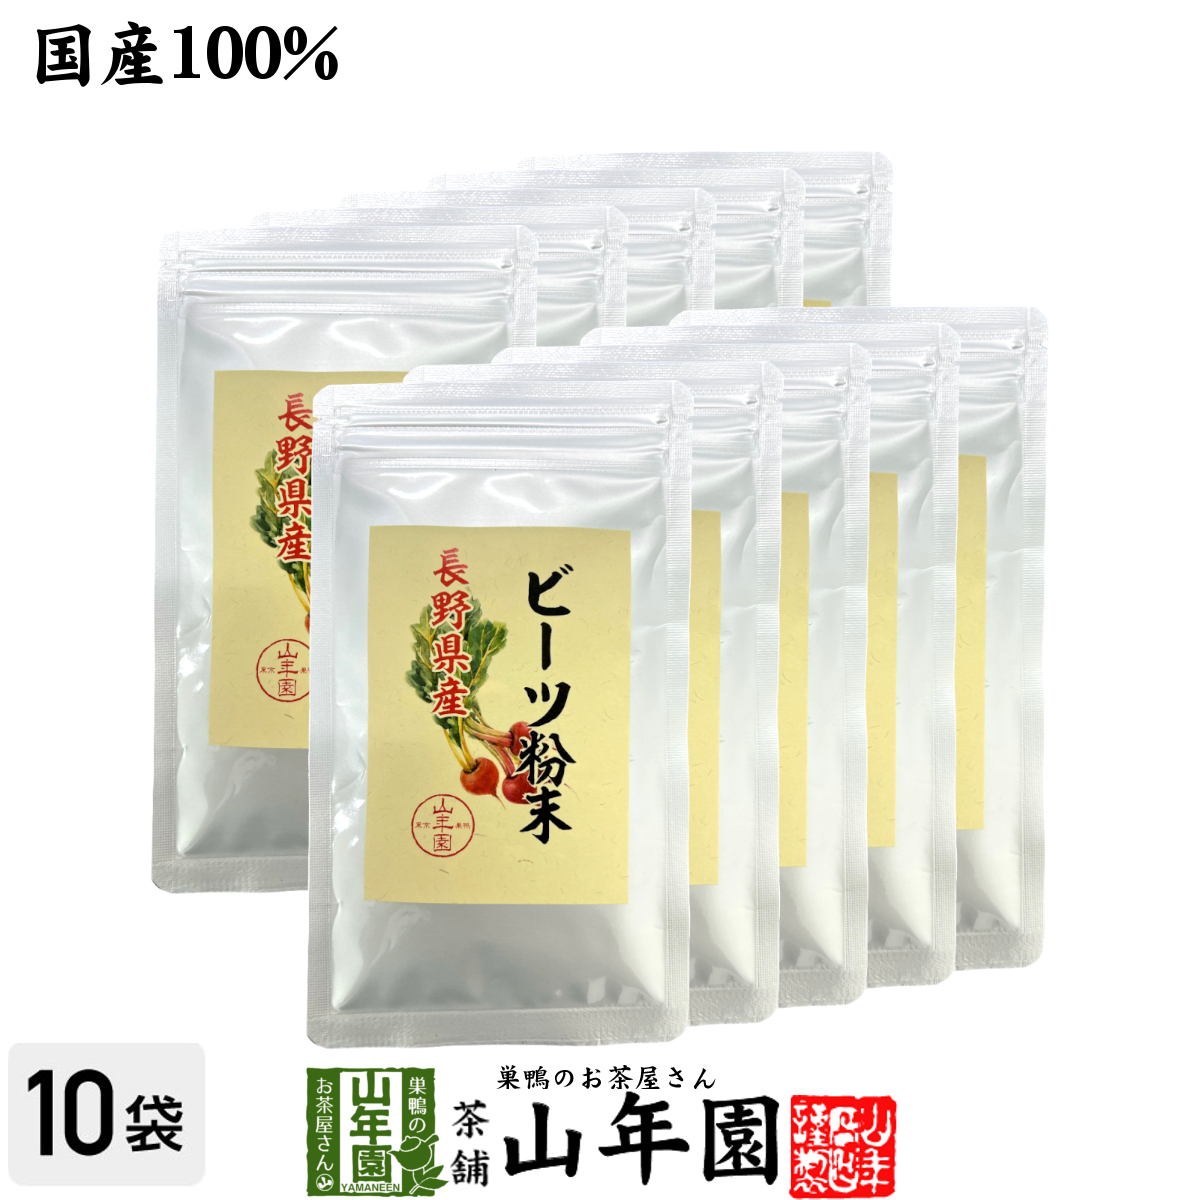  domestic production 100% Be tsu powder Nagano production 50g×10 sack set 